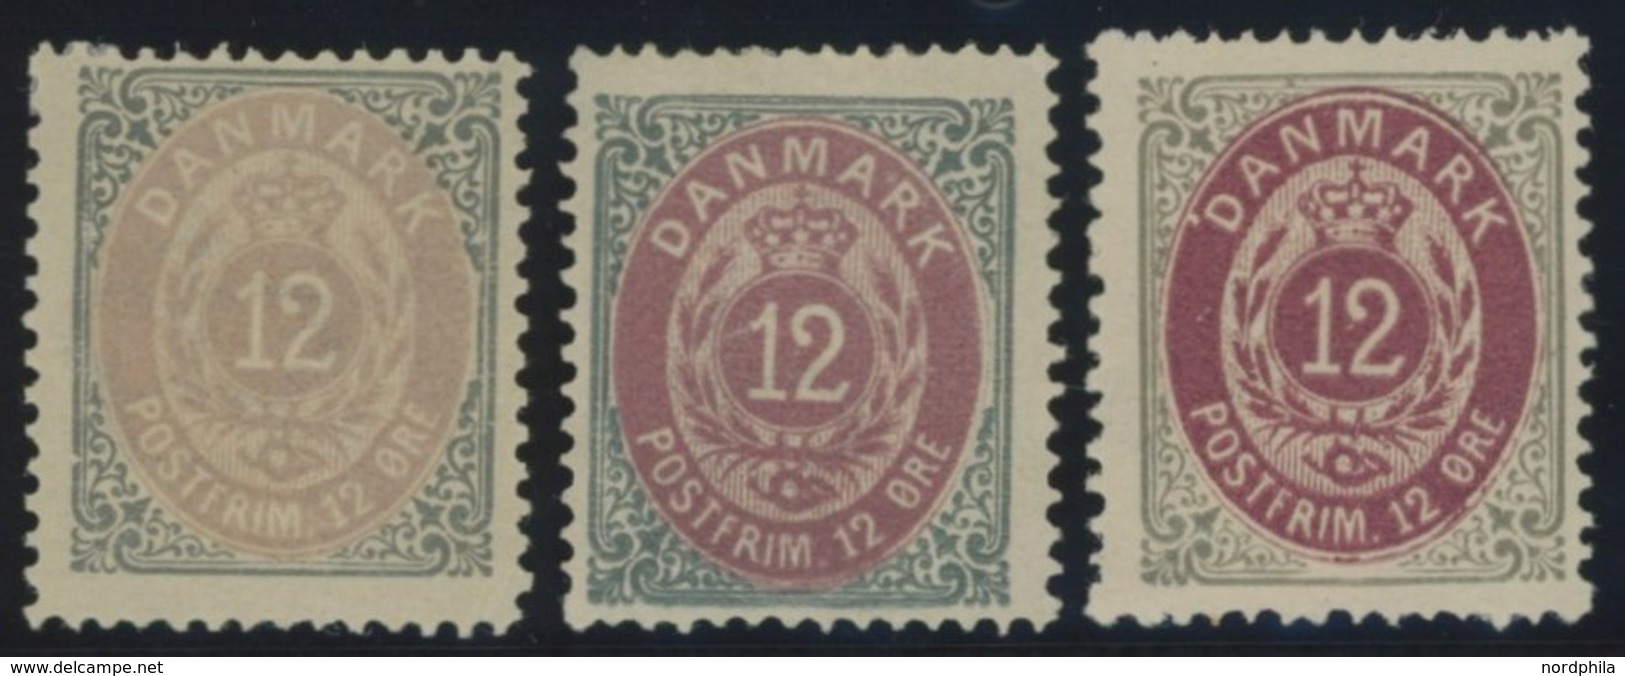 DÄNEMARK 27IYA *, 1875, 16 Ø Grau/braun, Gezähnt K 14:131/2, 3 Verschiedene Auflagen, Falzrest, Pracht - Gebraucht